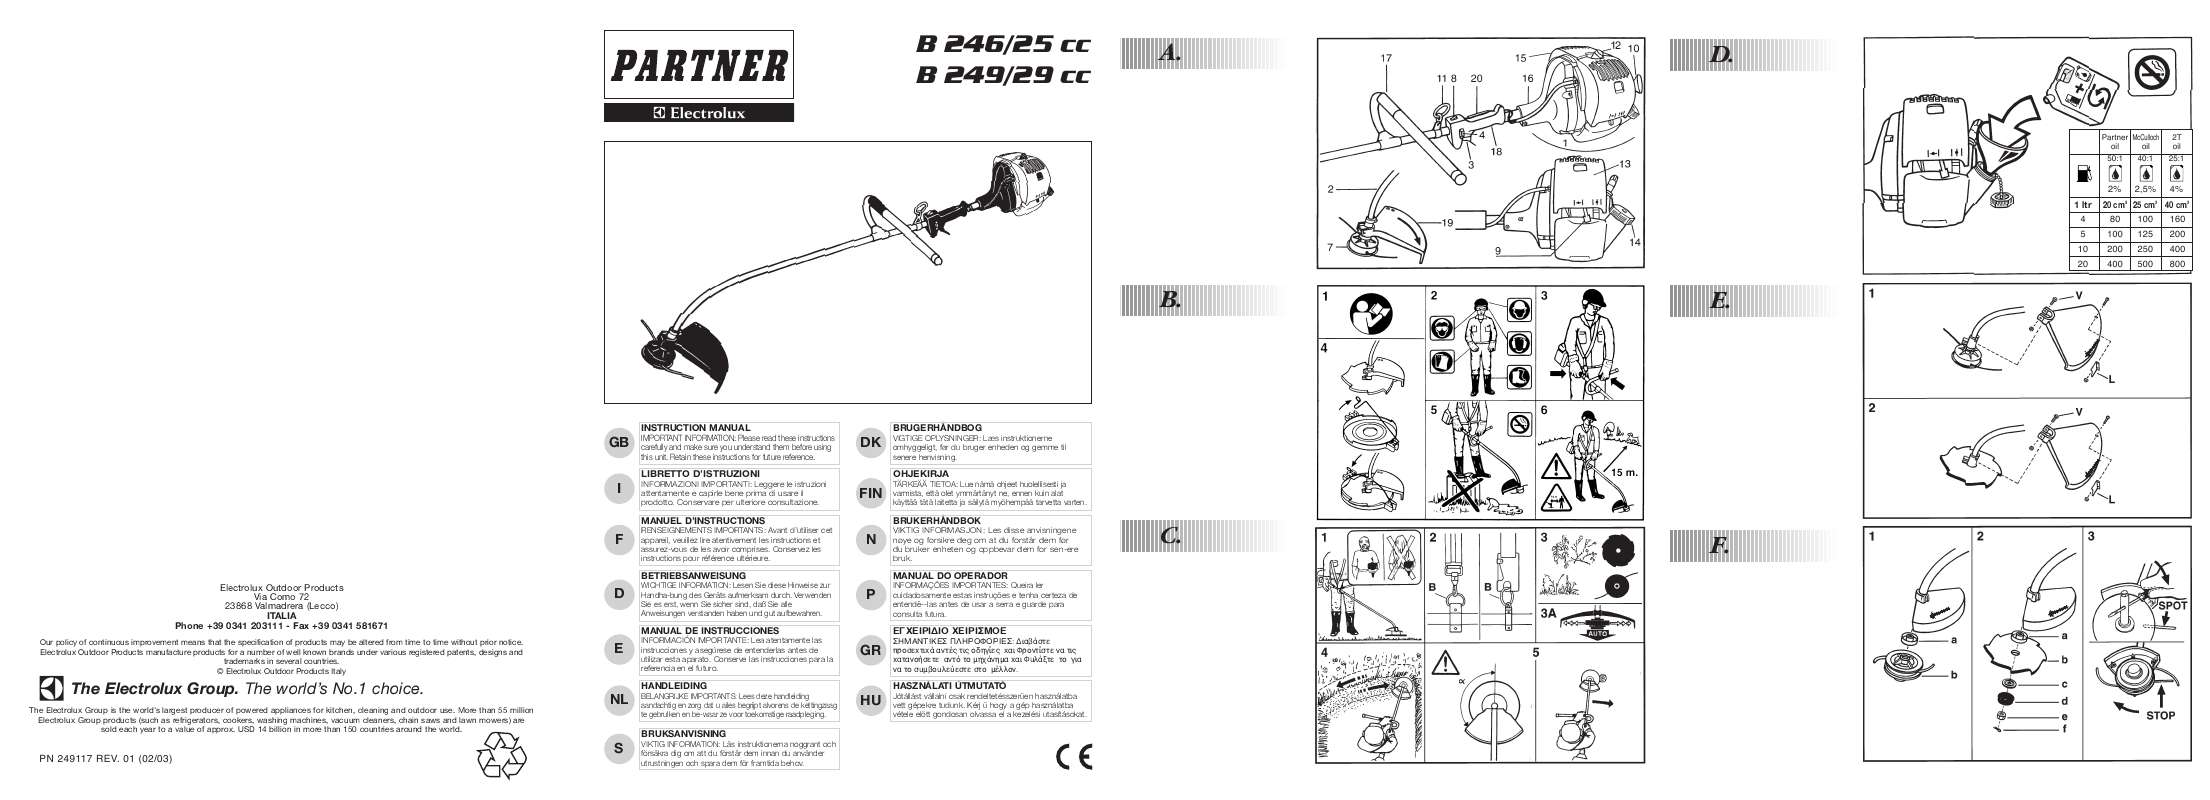 Guide utilisation  AEG-ELECTROLUX PARTNER B 249 29CC  de la marque AEG-ELECTROLUX